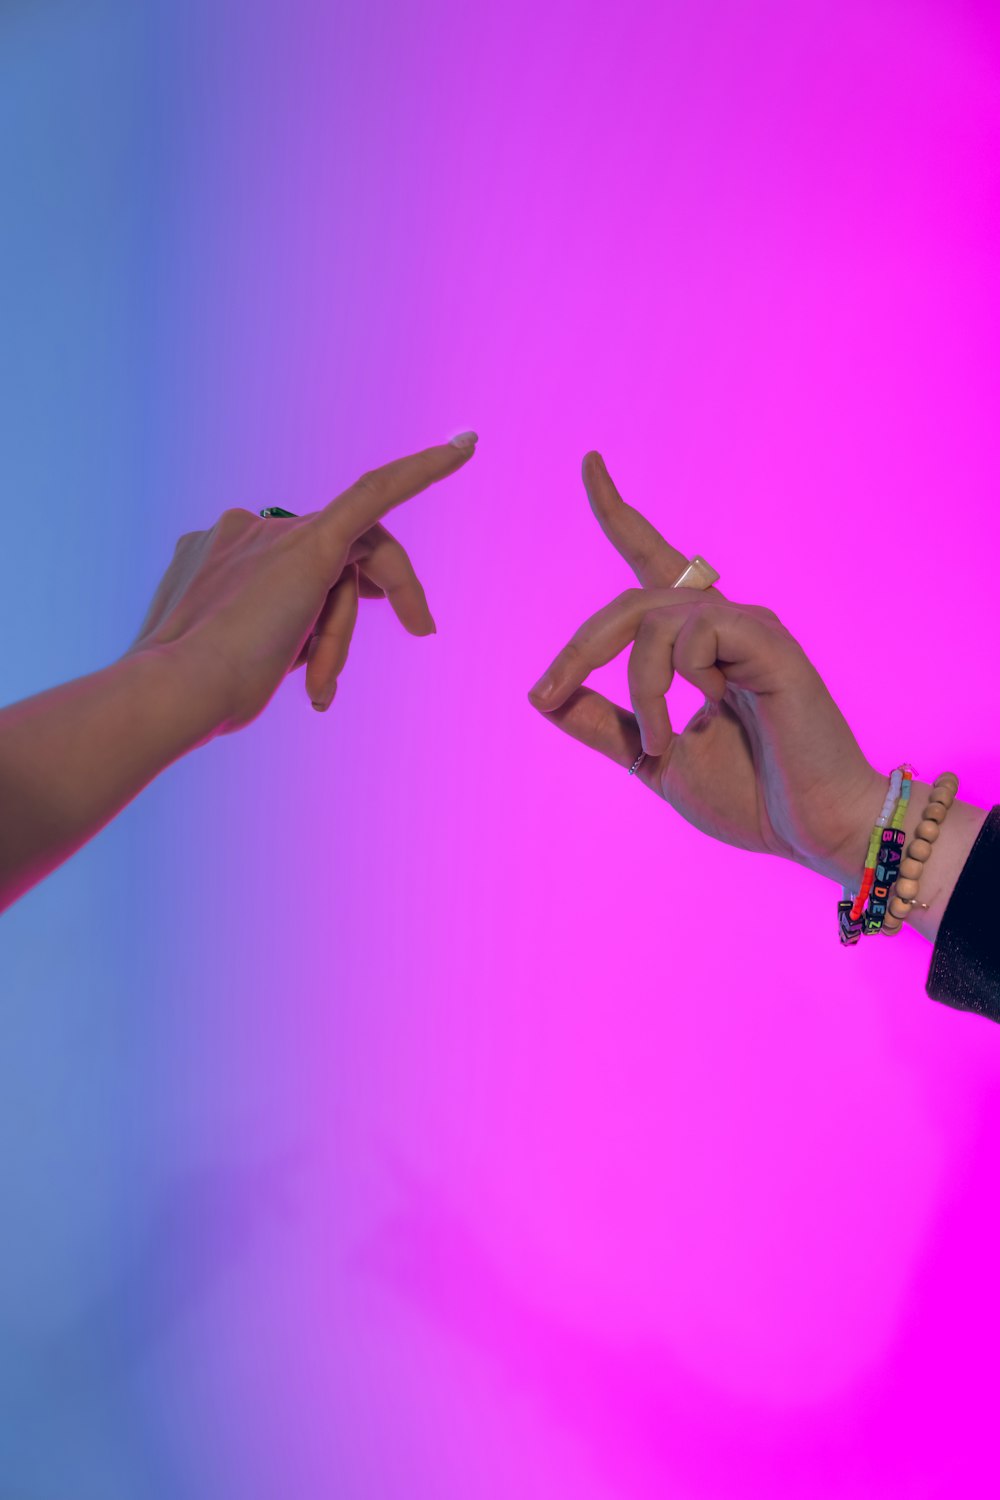 deux mains se tendant l’une vers l’autre devant un fond rose et bleu